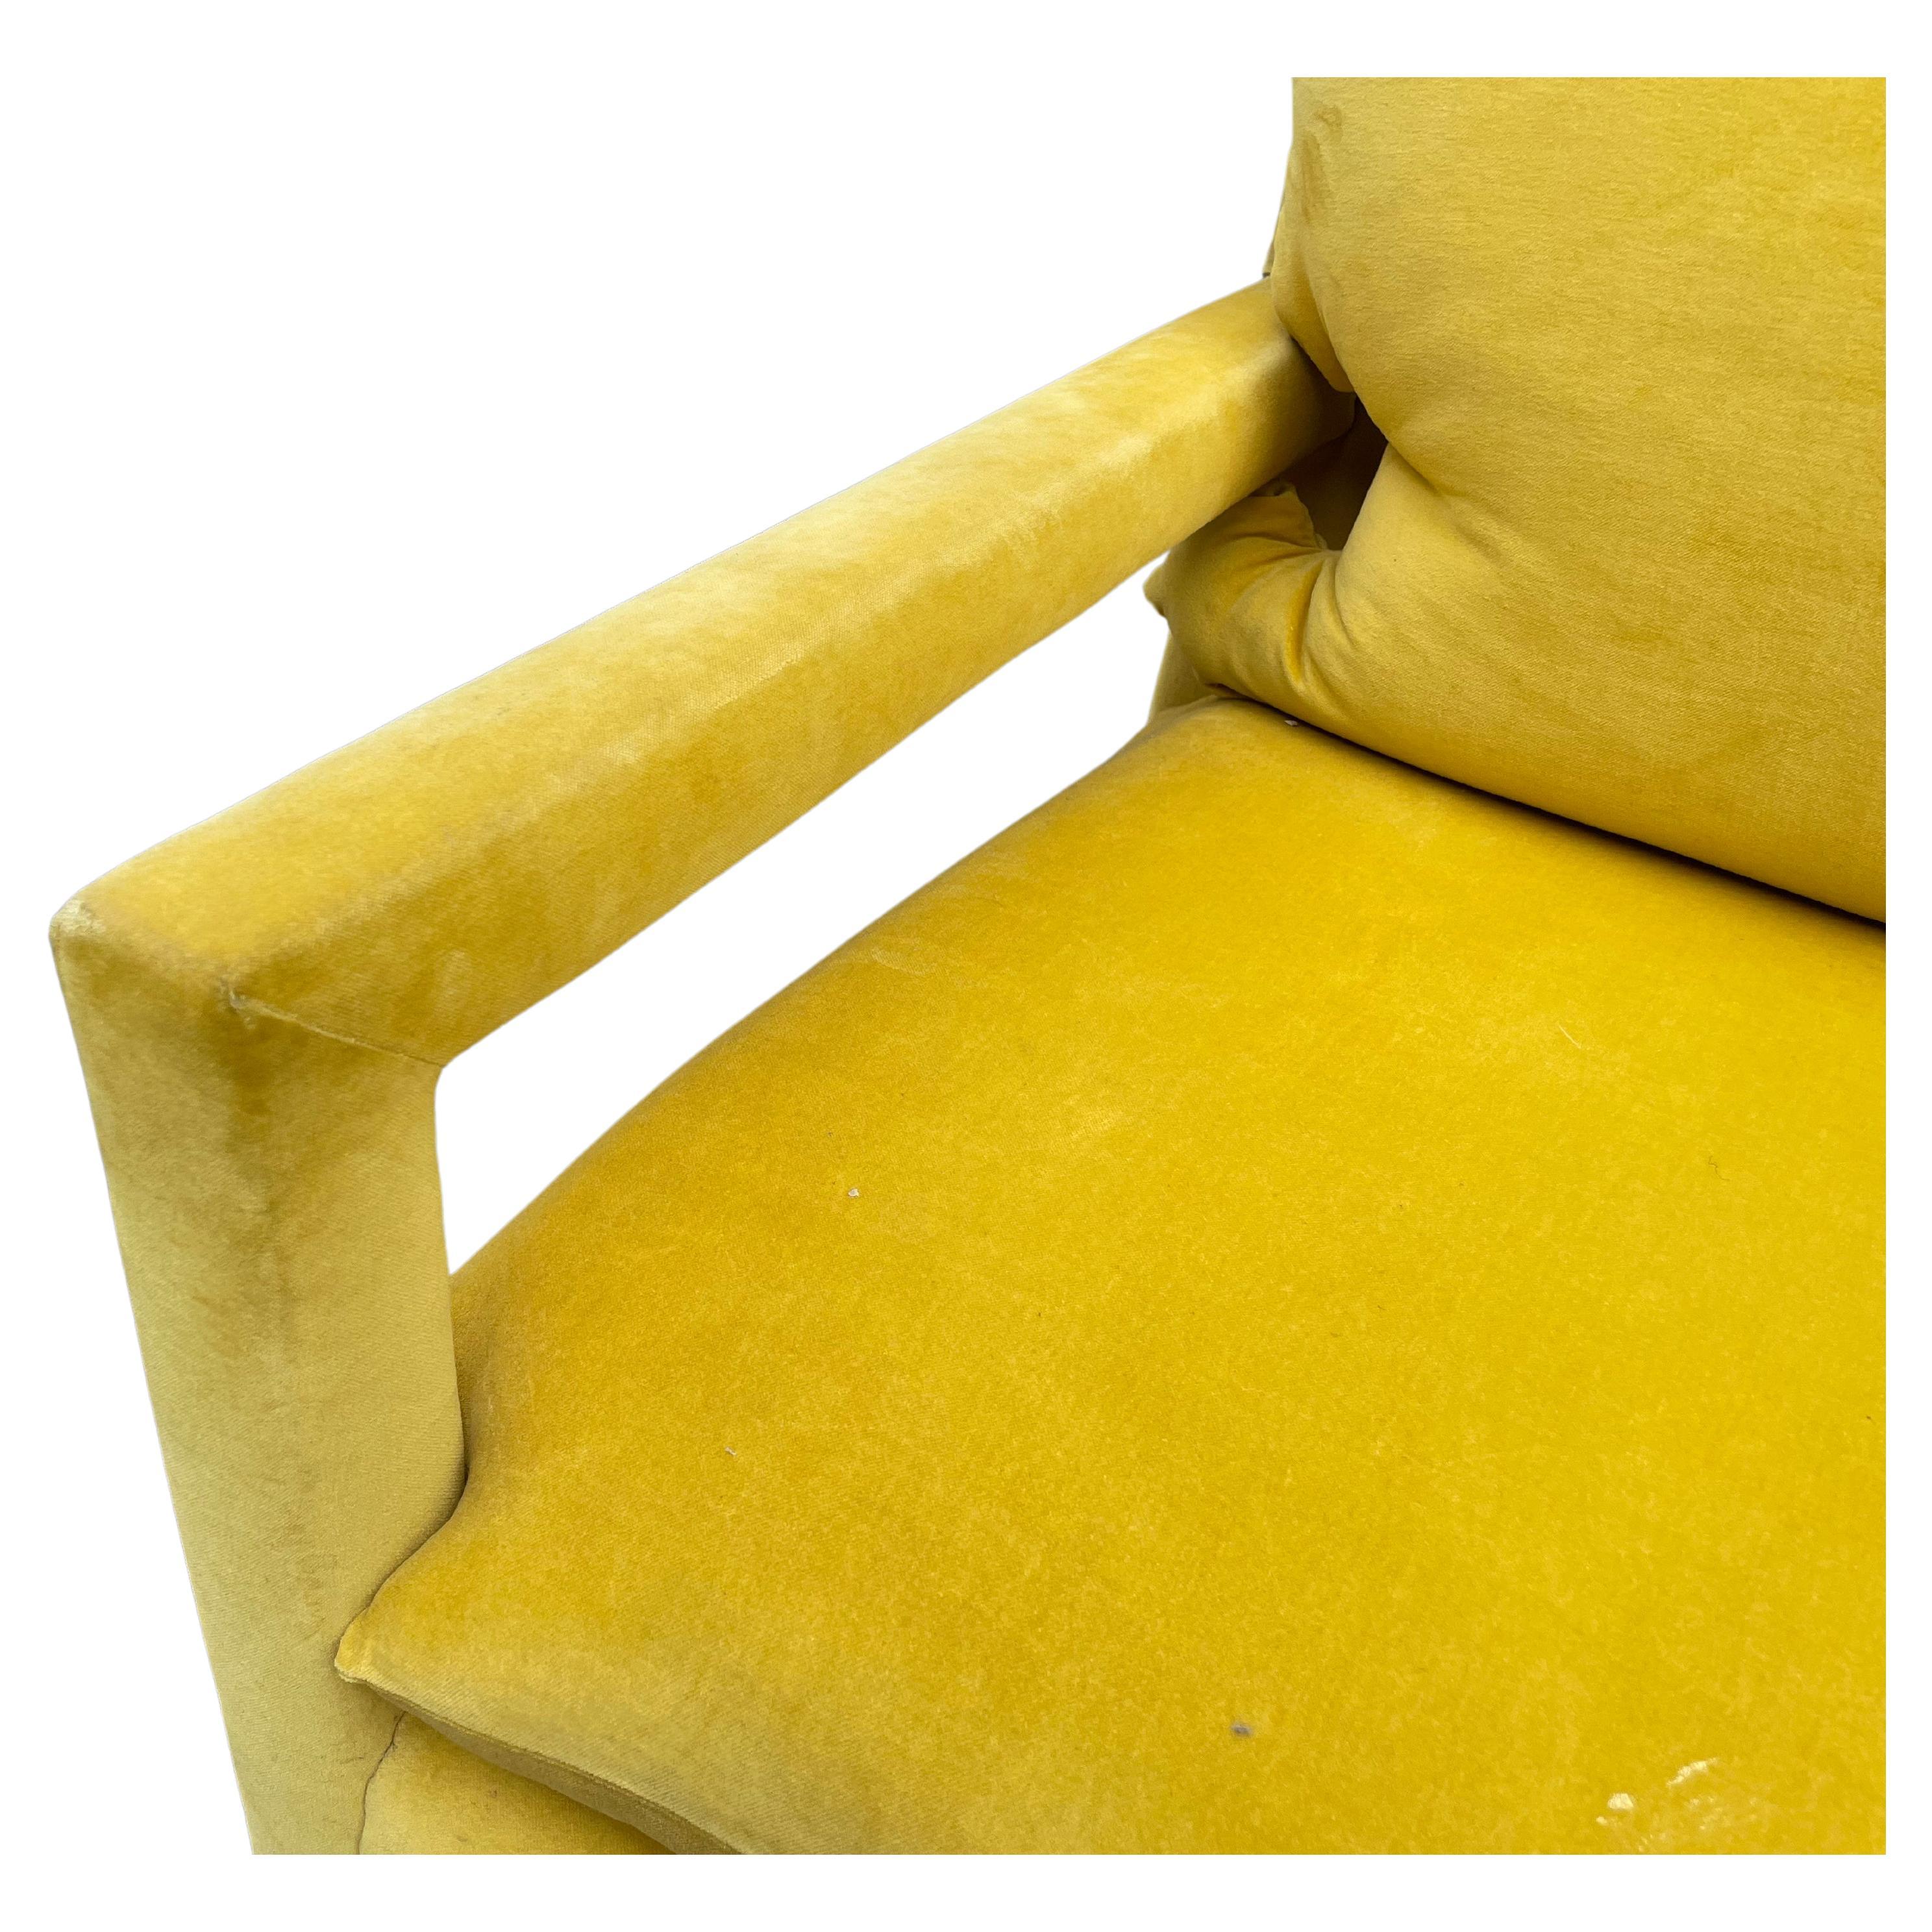 Une superbe paire de chaises Parsons vintage de Milo By, entièrement tapissées d'un velours jaune de haute qualité. Chaque chaise est équipée d'un dossier et d'un coussin d'assise amovibles. Extrêmement confortable.

Très bon état.

Le prix